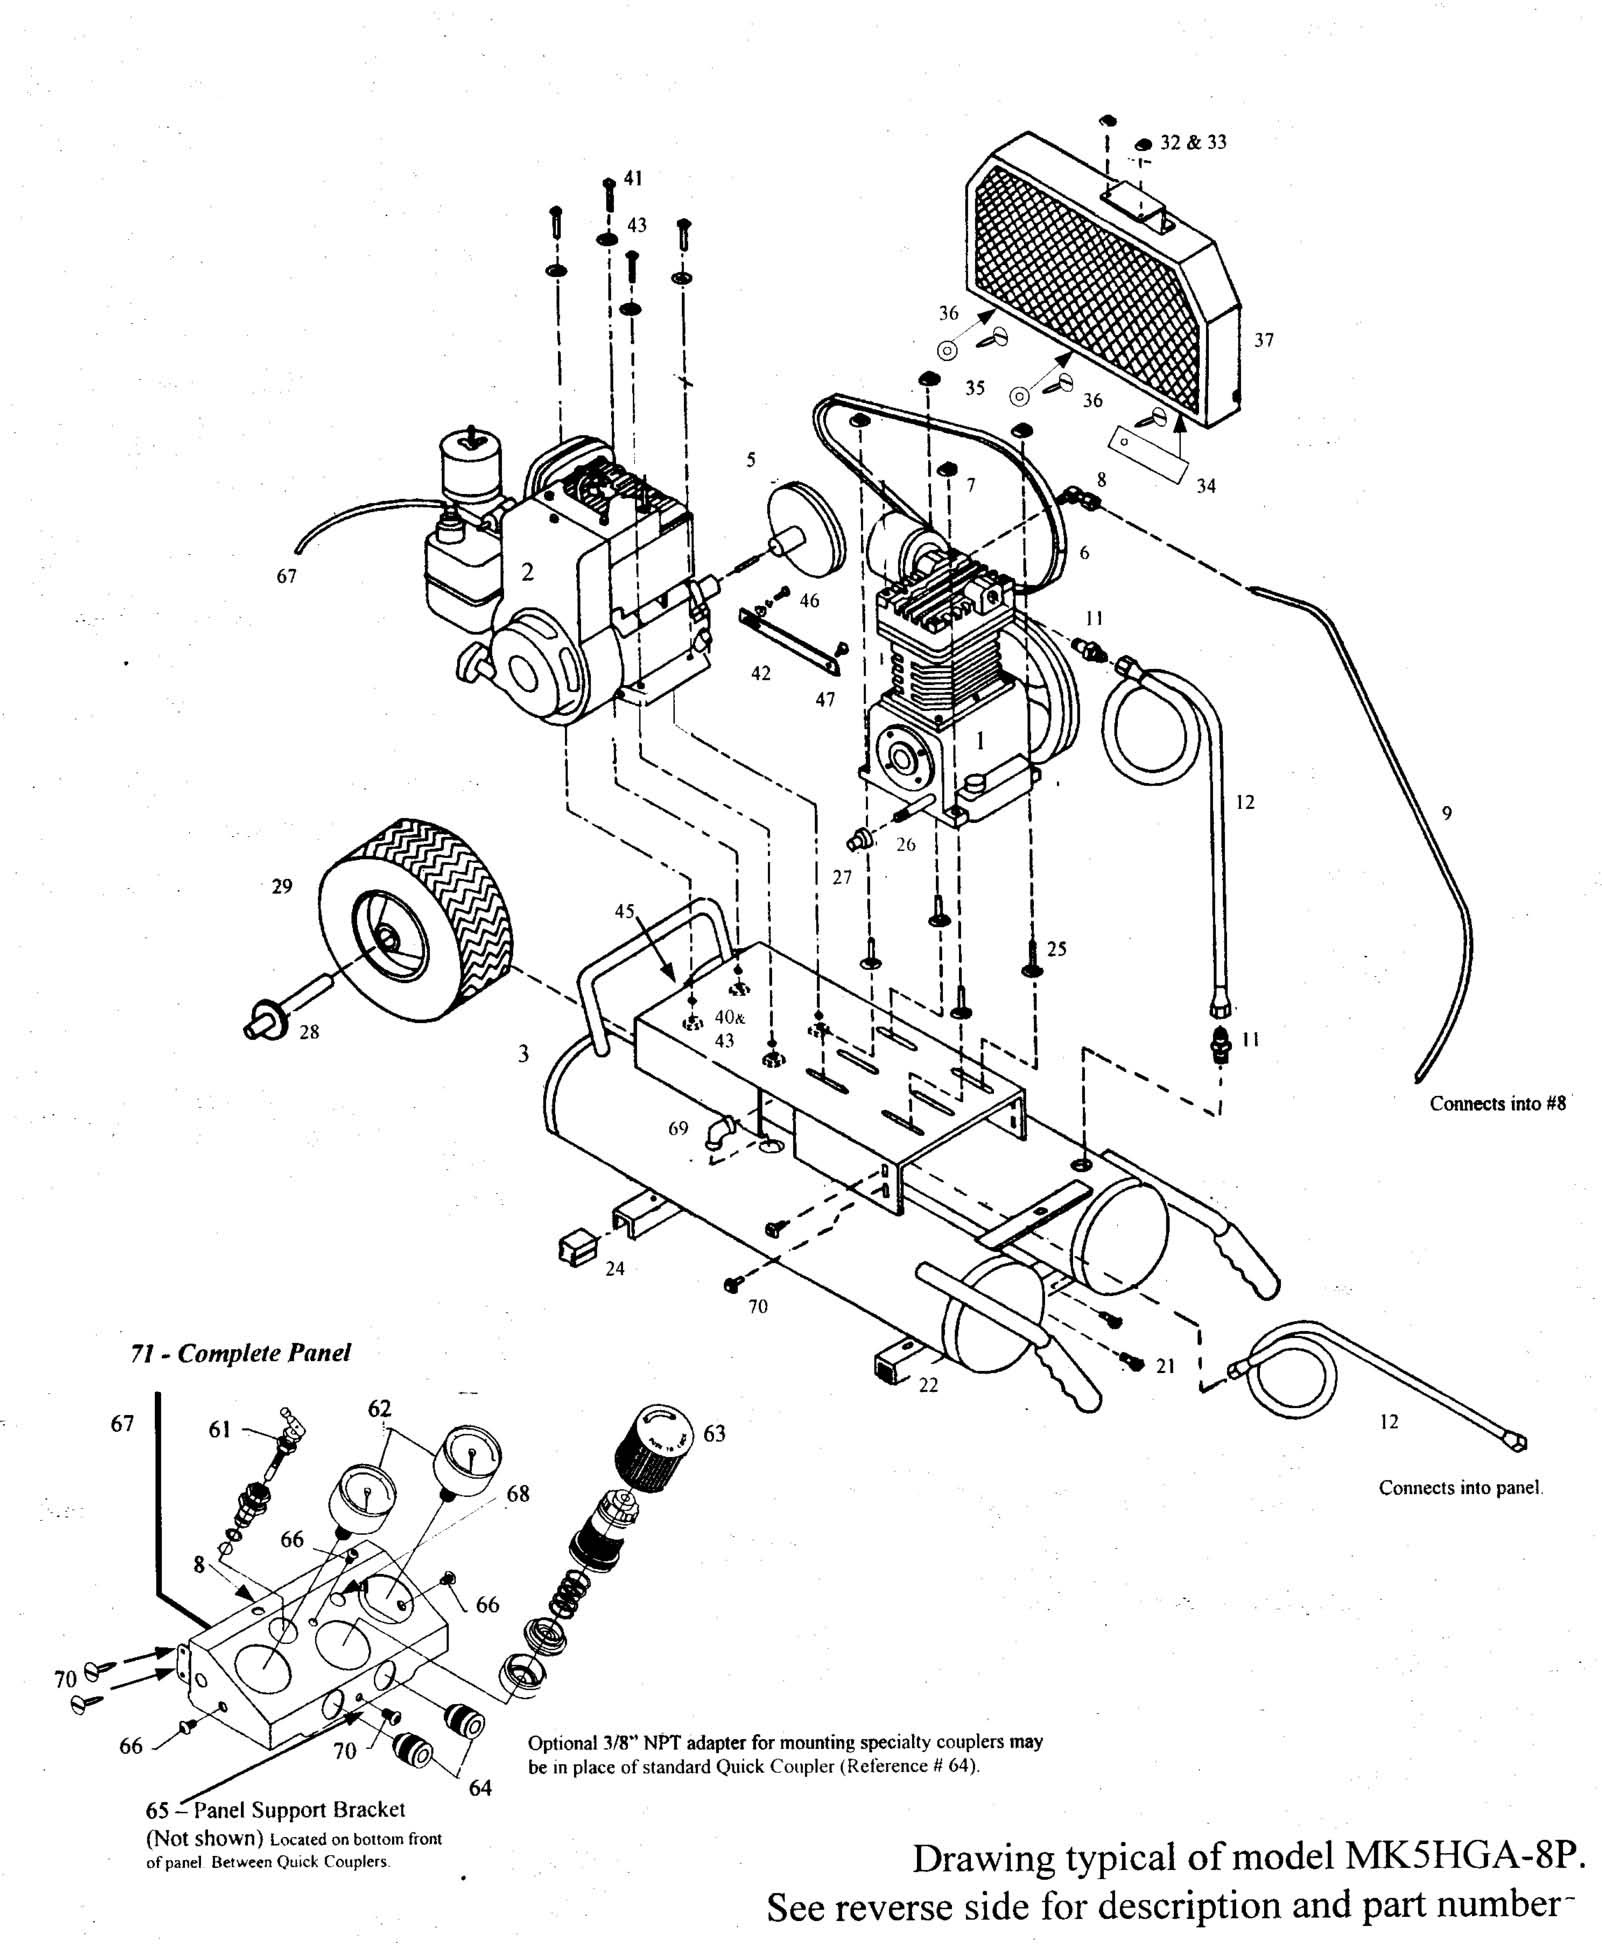 Air Compressor Parts Diagram Emglo Mk5hga 8p Air Pressor Parts Of Air Compressor Parts Diagram